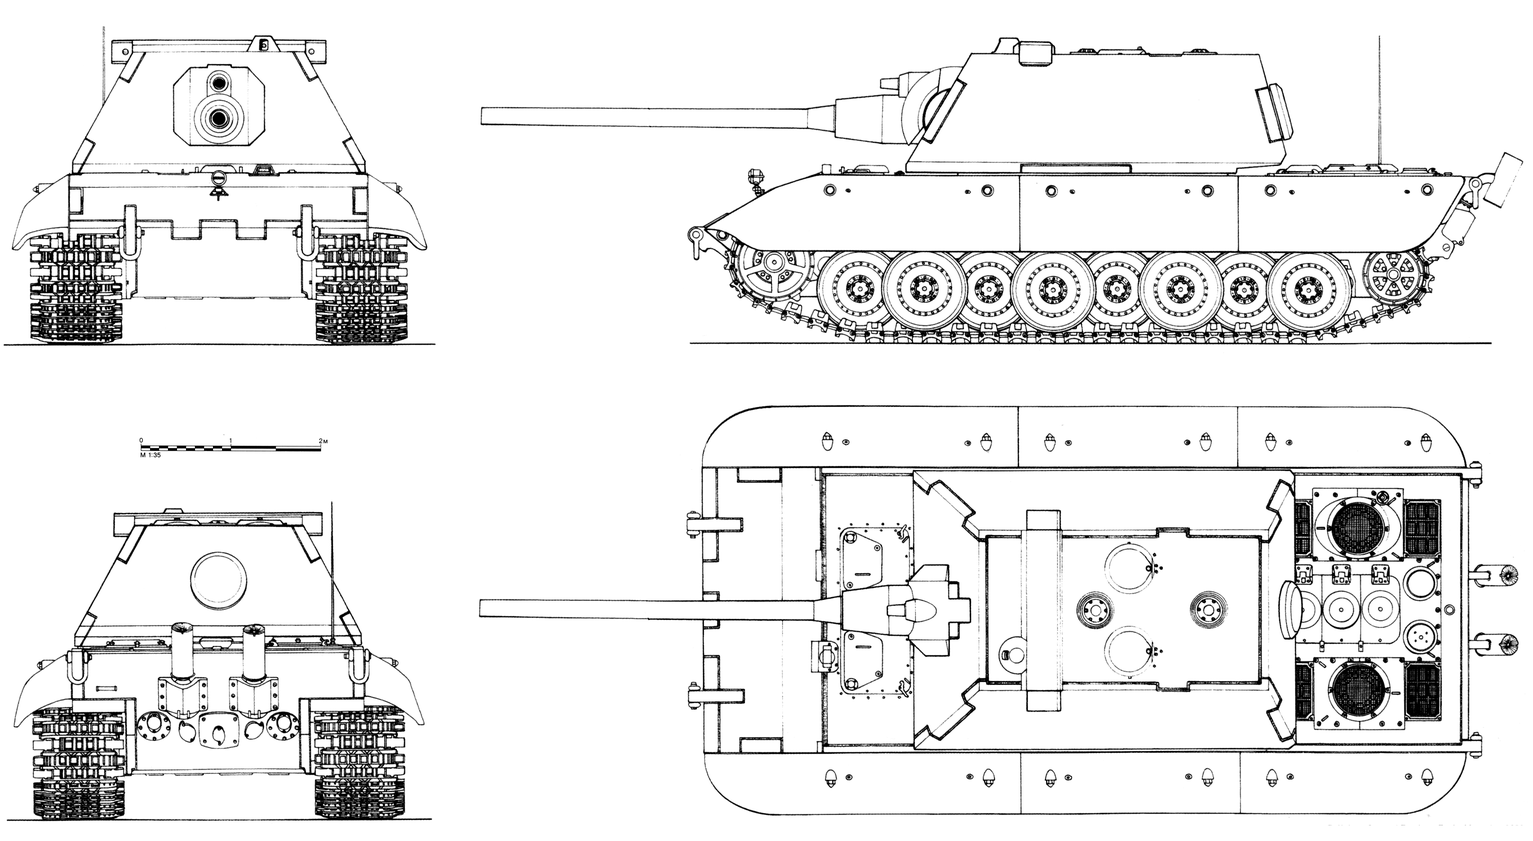 Немецкий сверхтяжелый танк Е-100: история разработки, основные характеристики, достоинства и недостатки